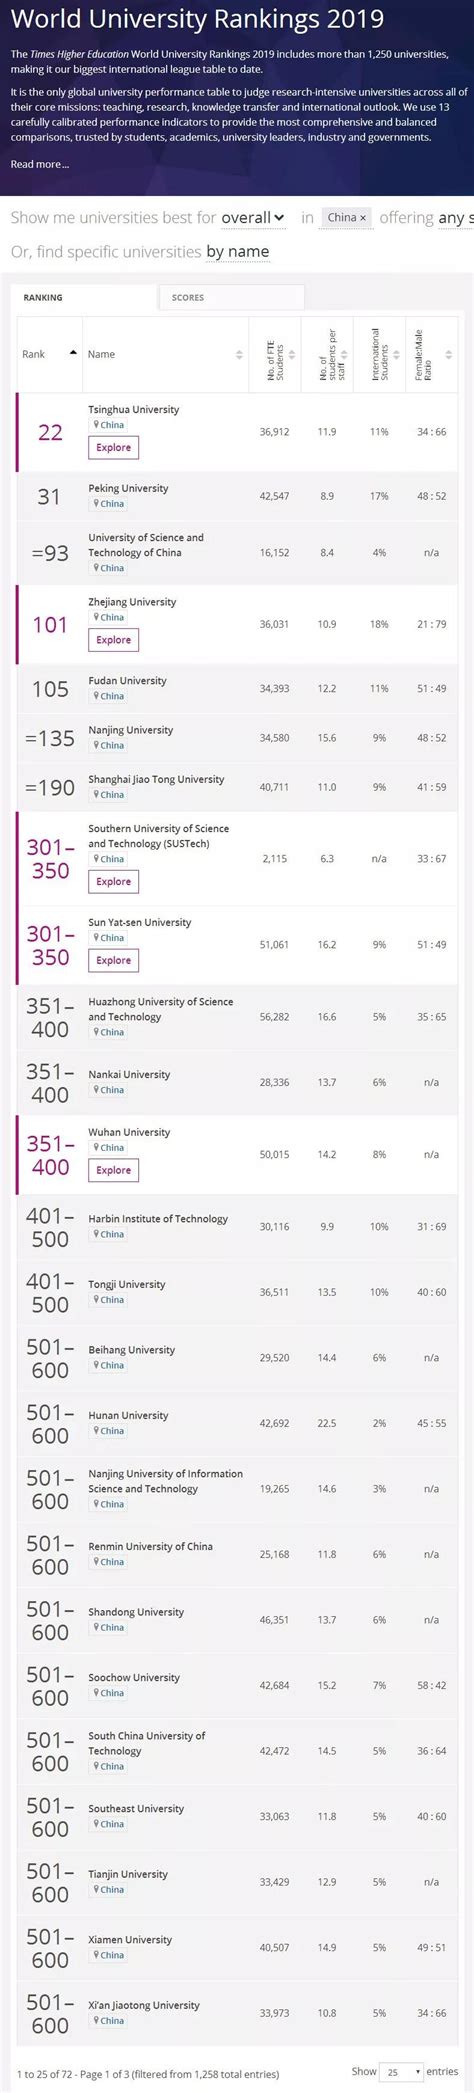 南方科技大学泰晤士排名